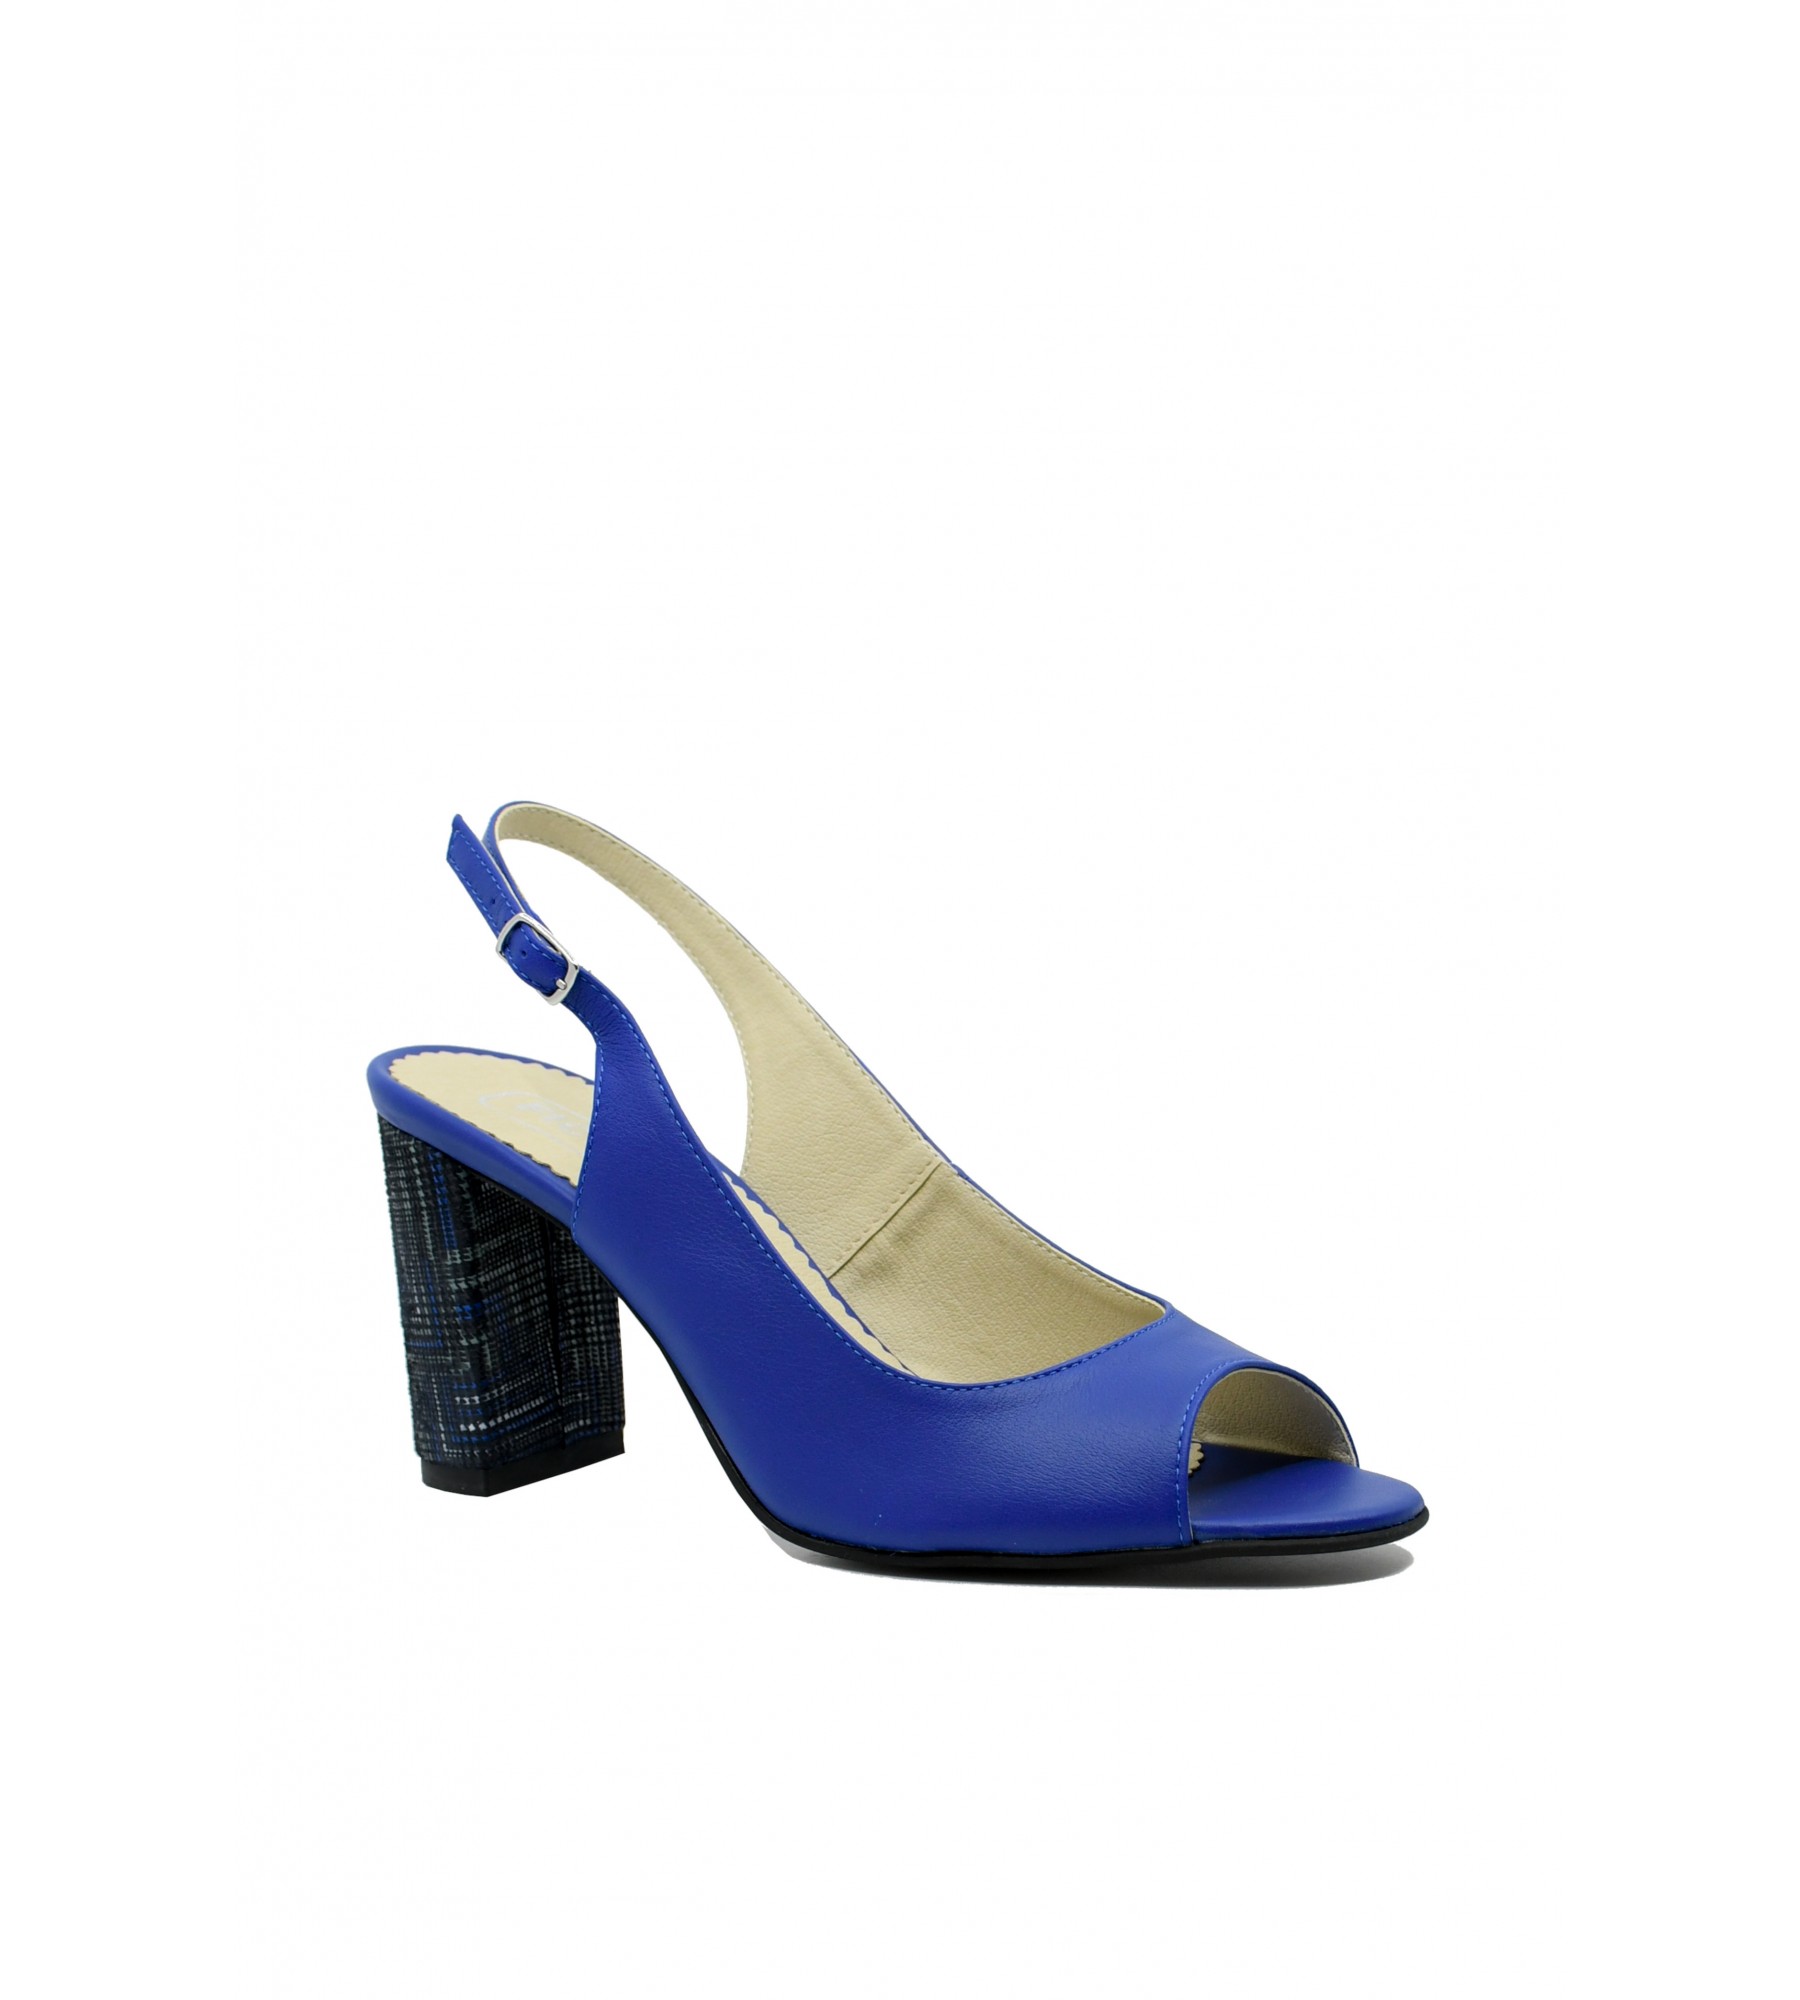 mărimea Putere scut  In Tempo - Sandale elegante cu toc bloc, albastru intens, din piele naturală